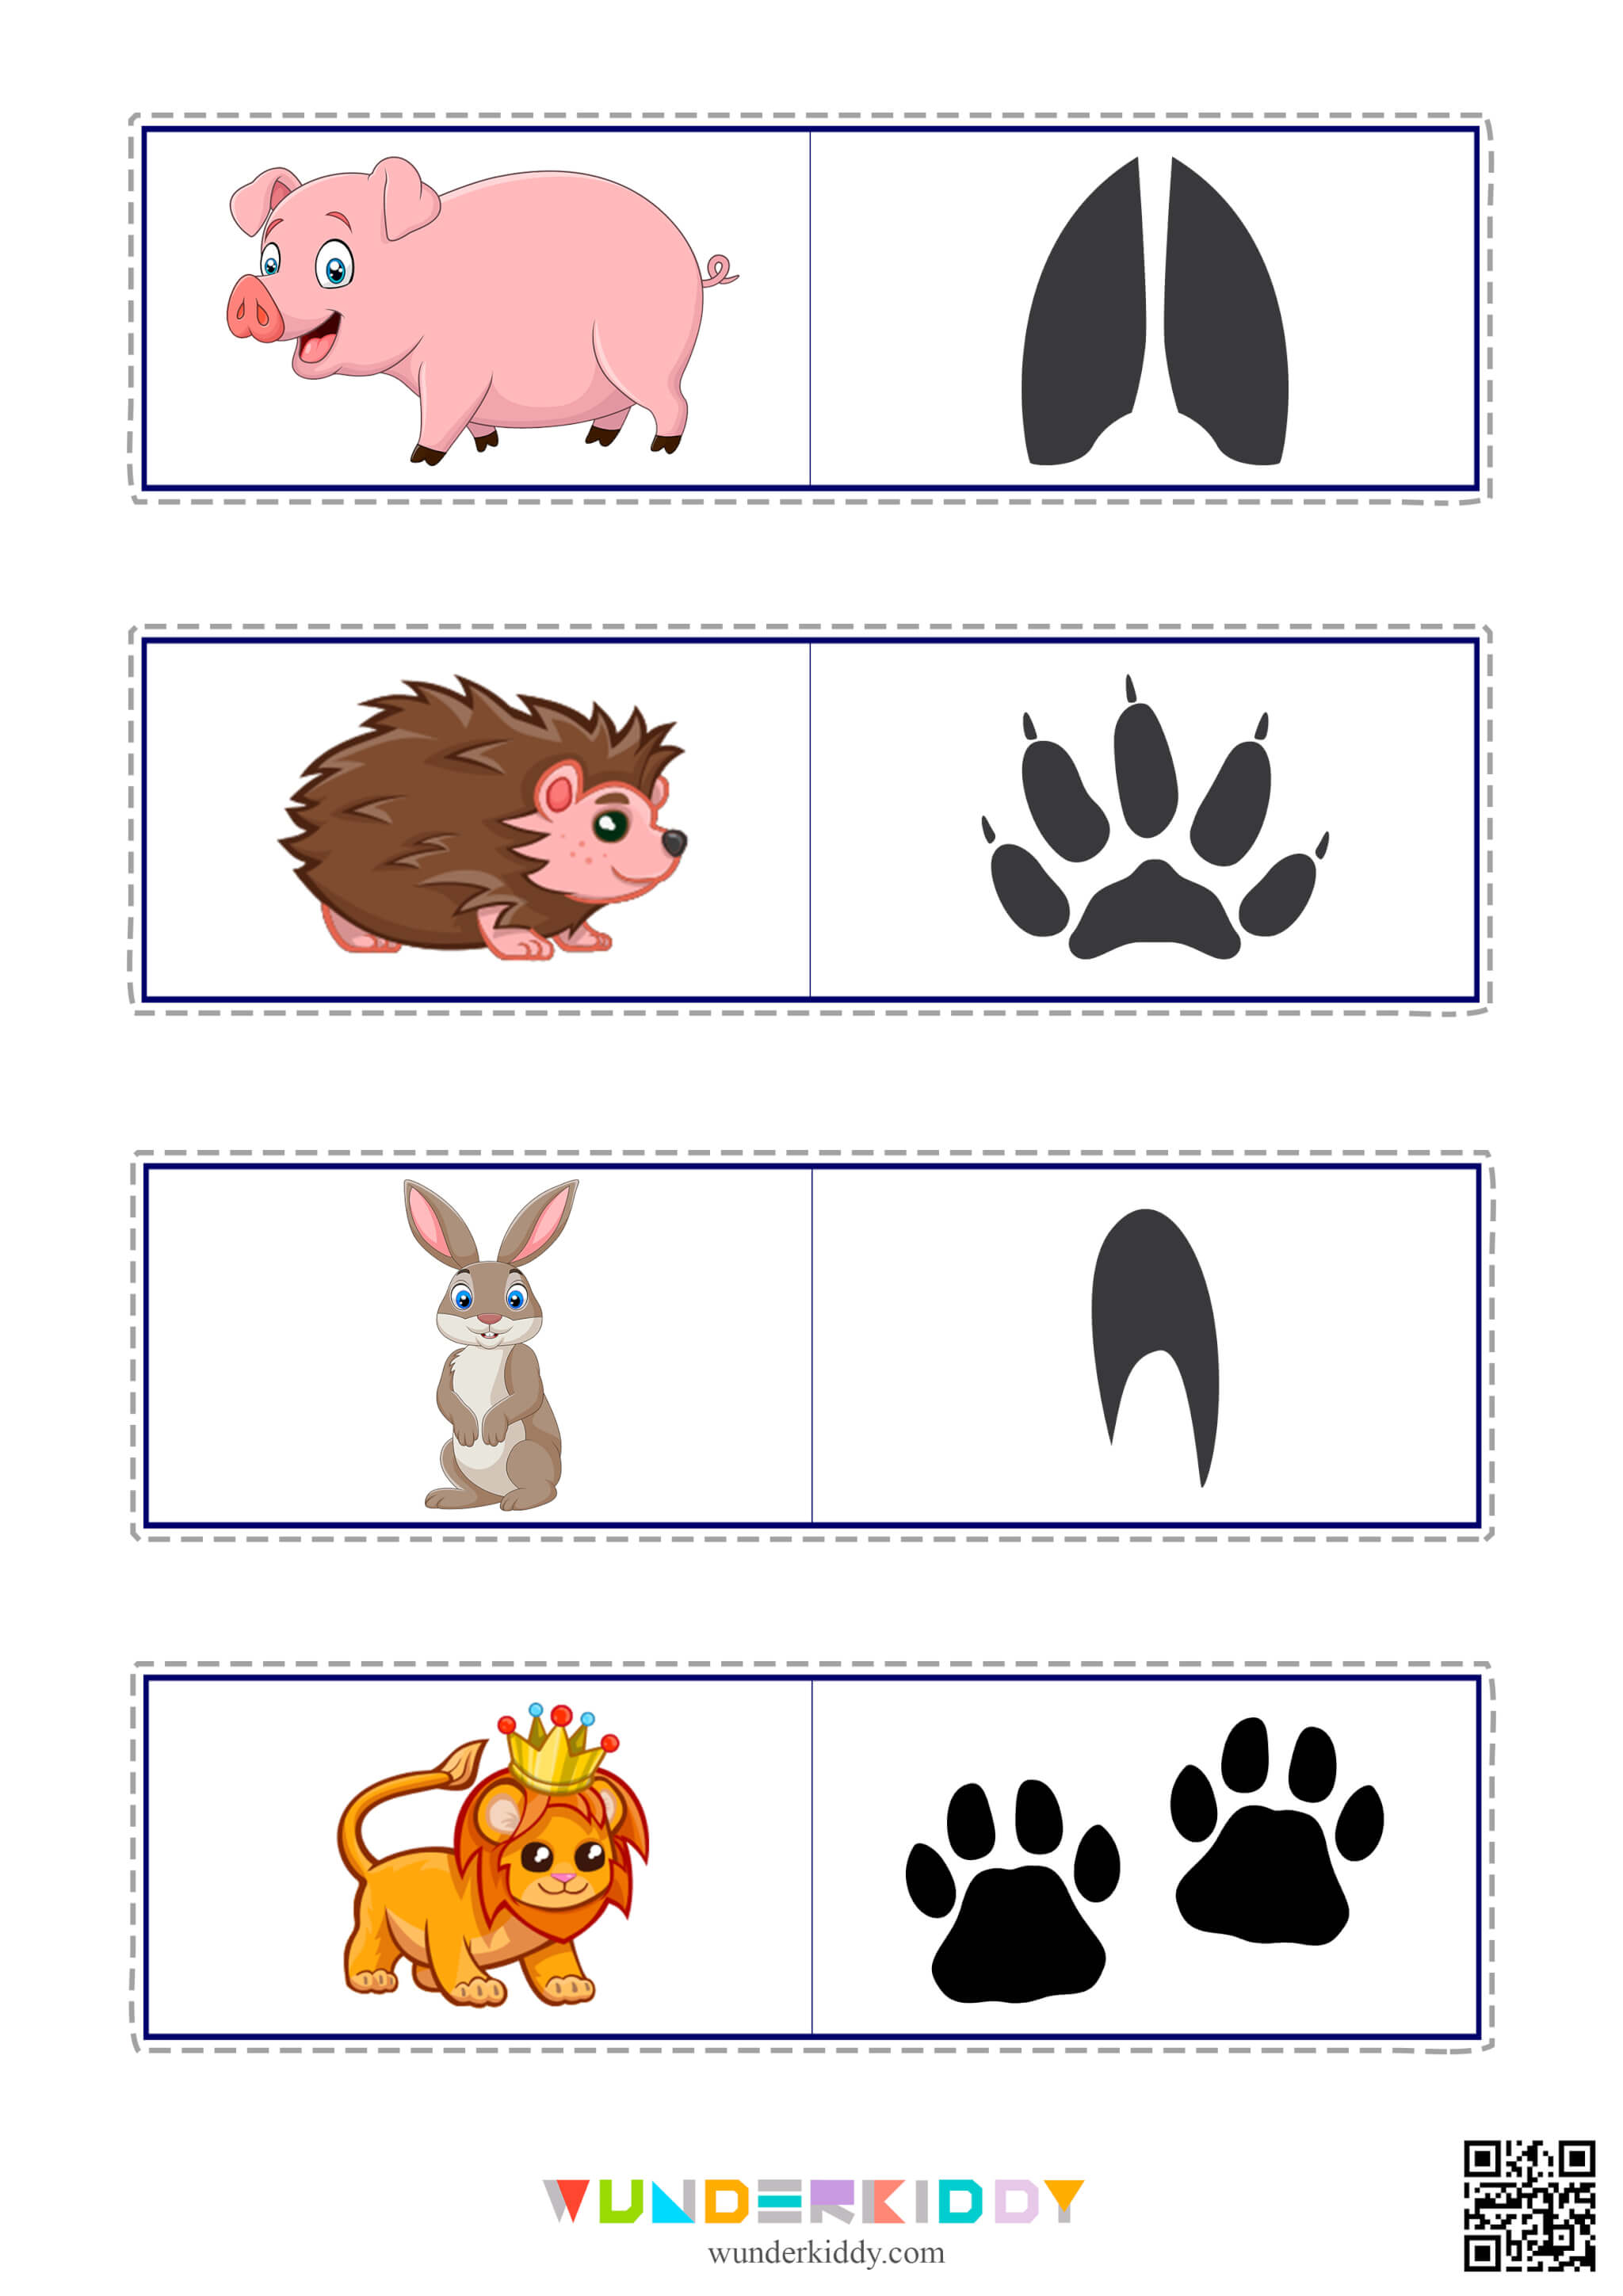 Matching Worksheet Animal Tracks - Image 7